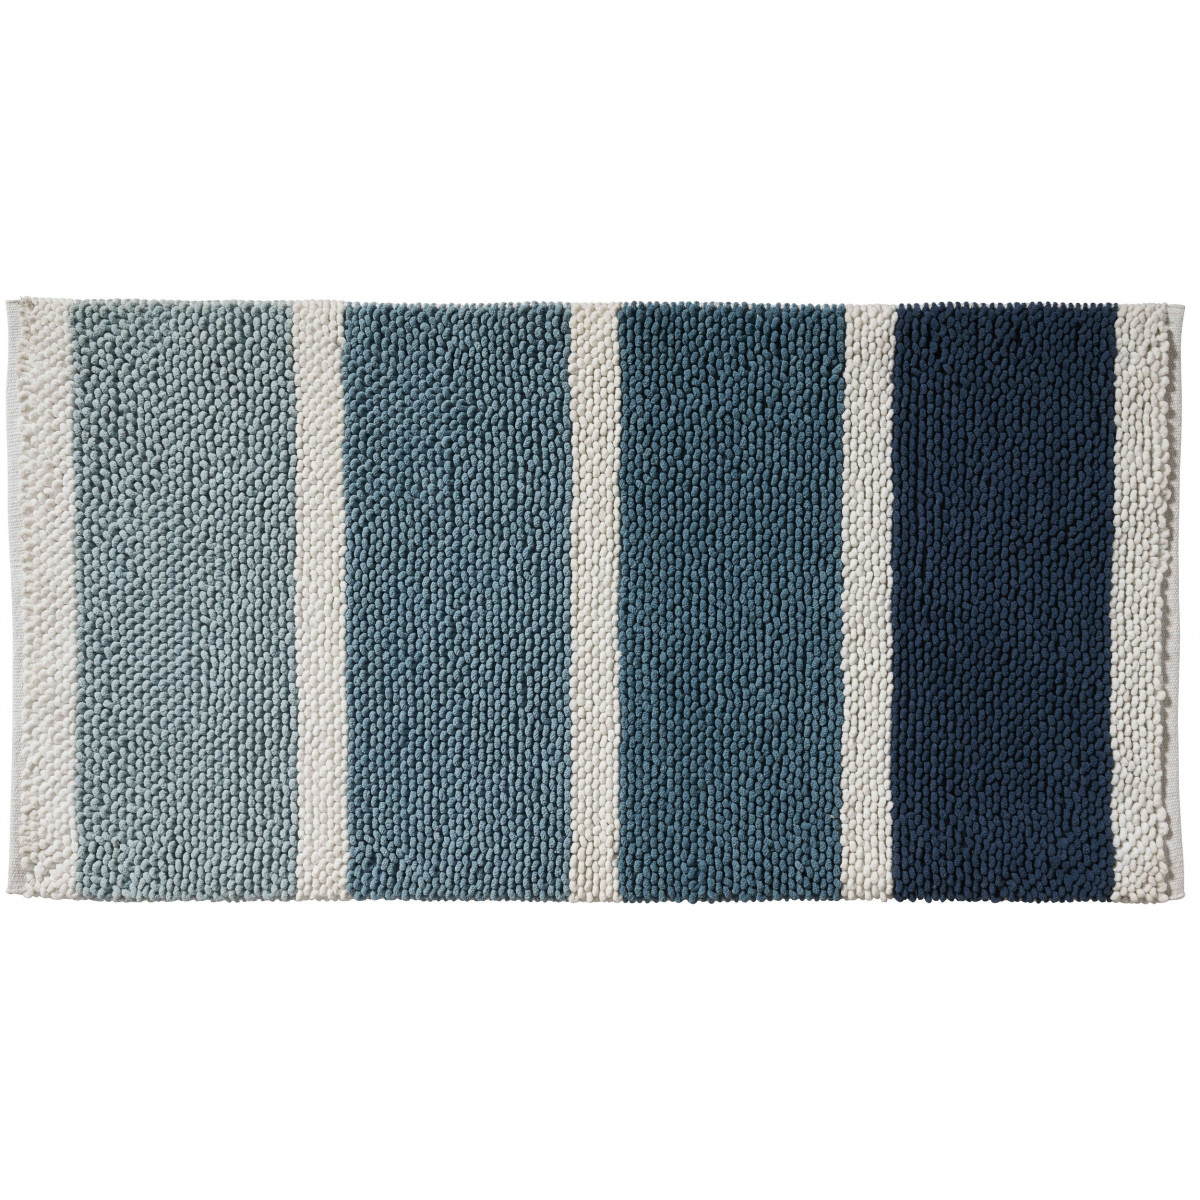 tapis de bain en polycoton fantaisie bleu 60x120cm